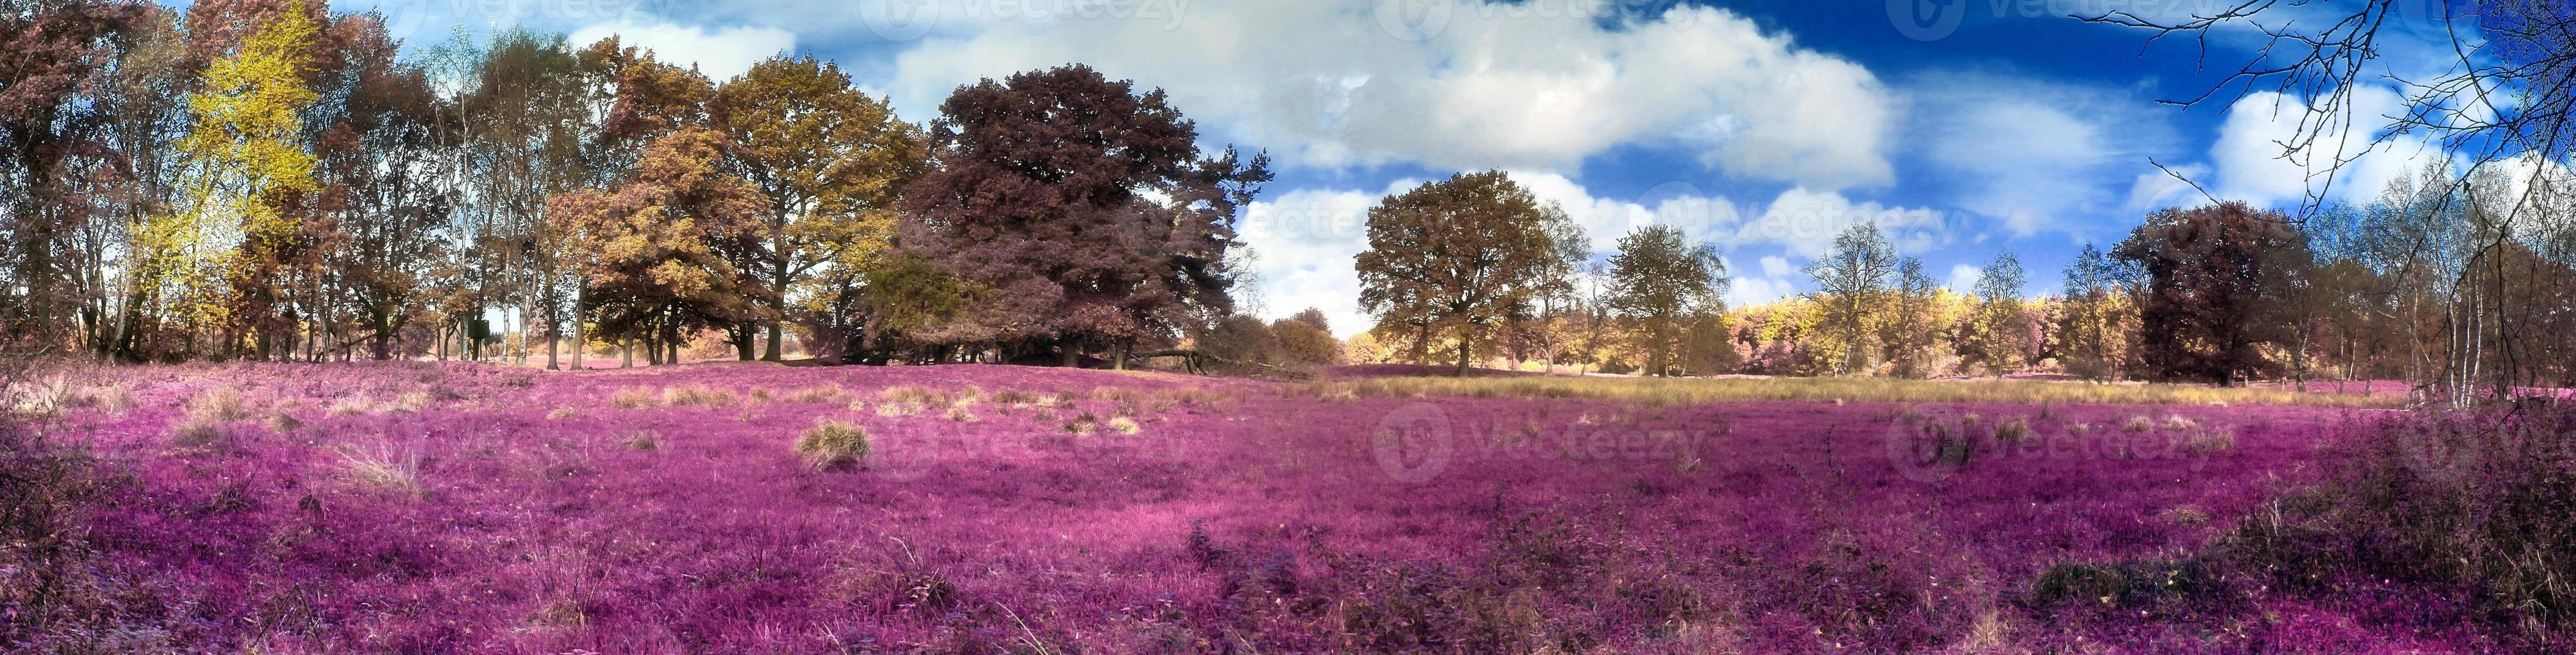 hermoso y colorido paisaje de fantasía en un estilo infrarrojo púrpura asiático foto